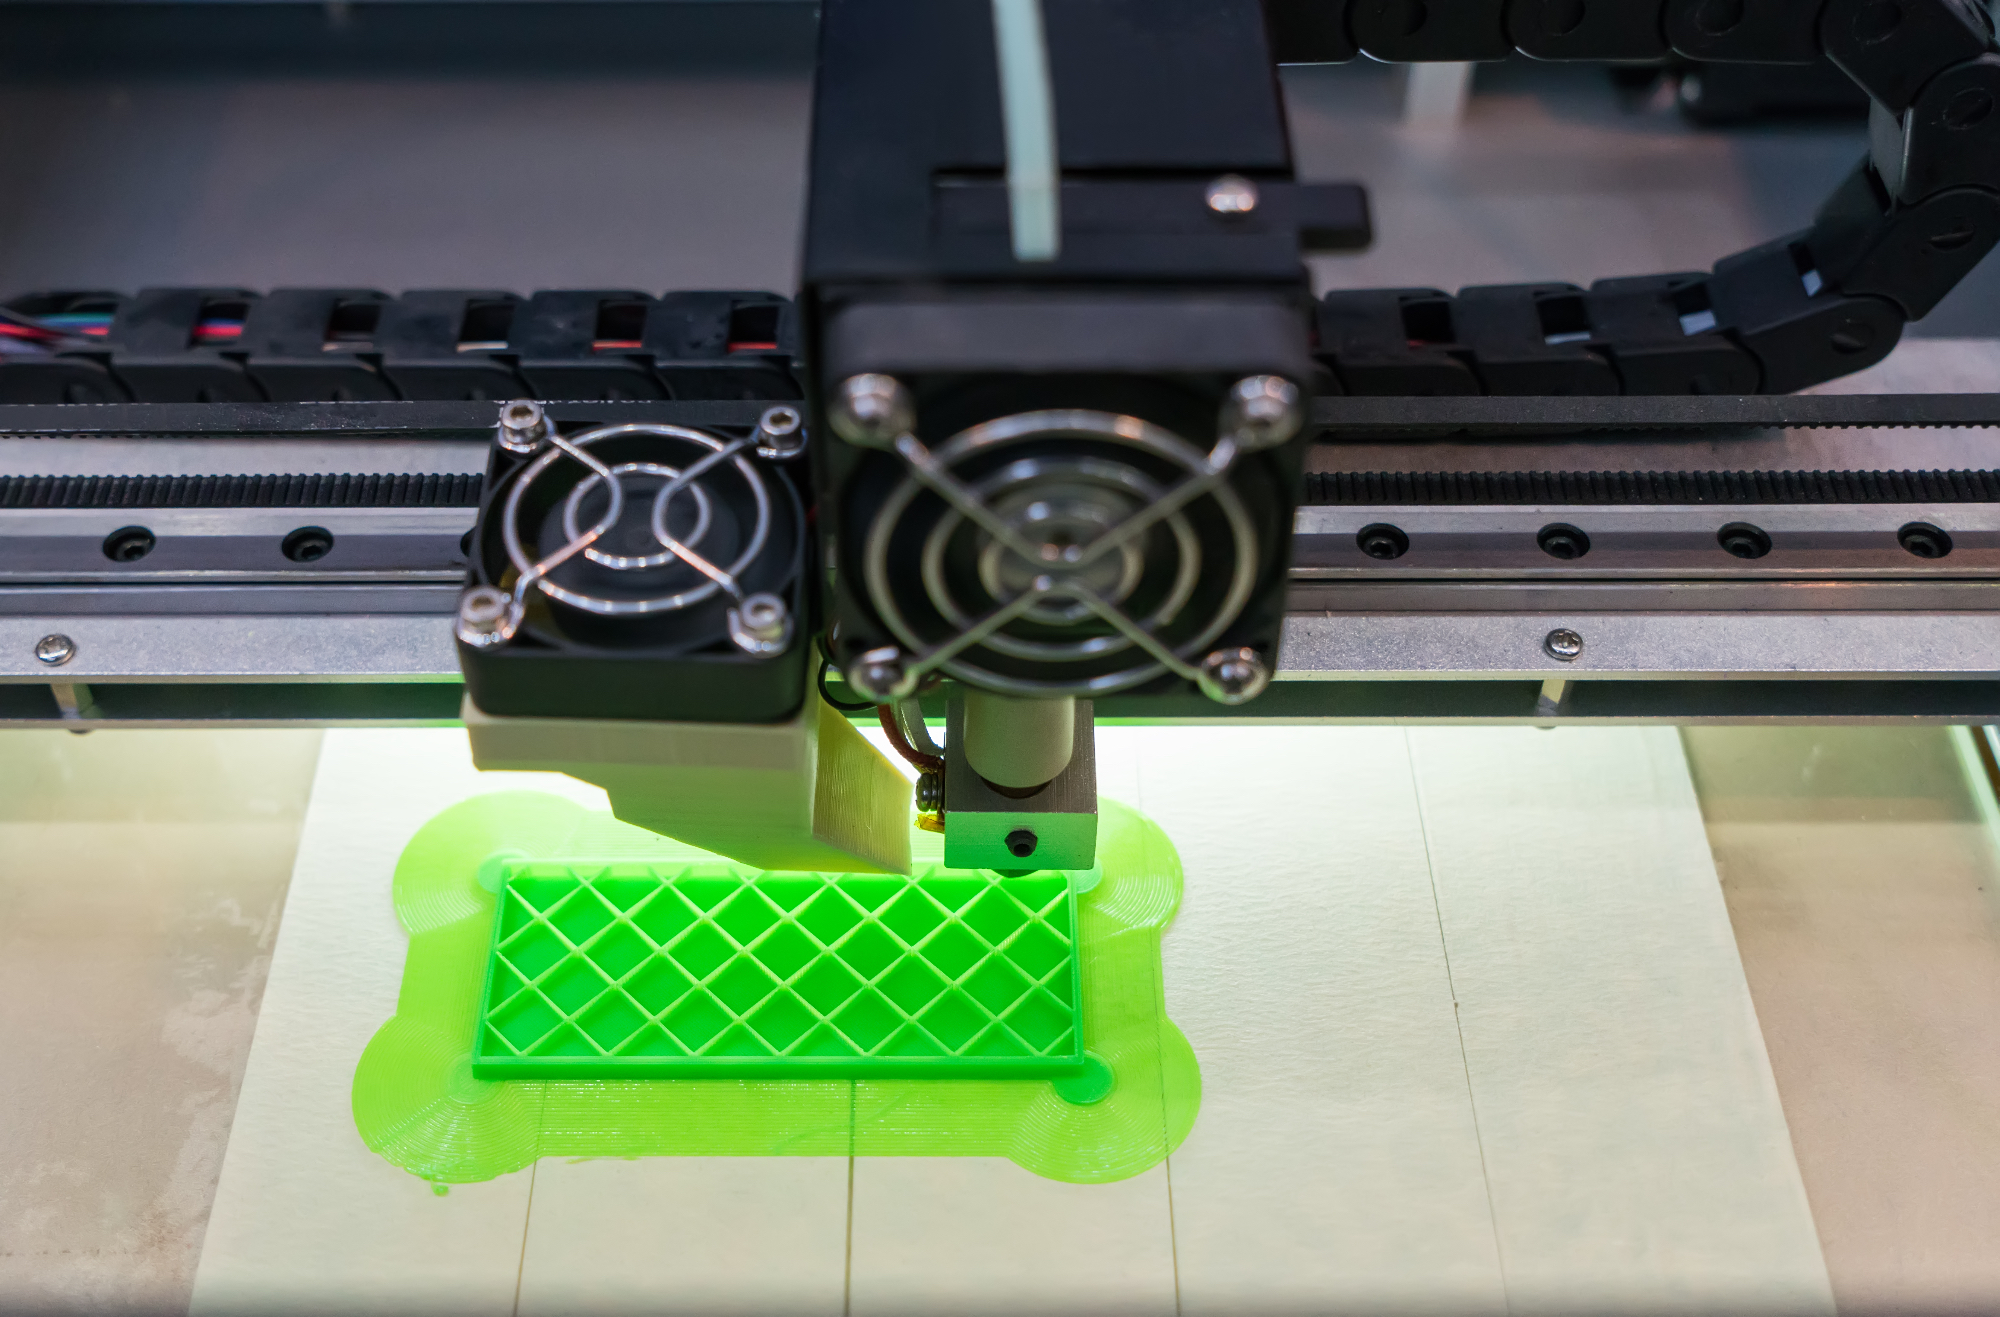 Sobna tehnologija 3d print, ki je poenostavila proizvodne procese